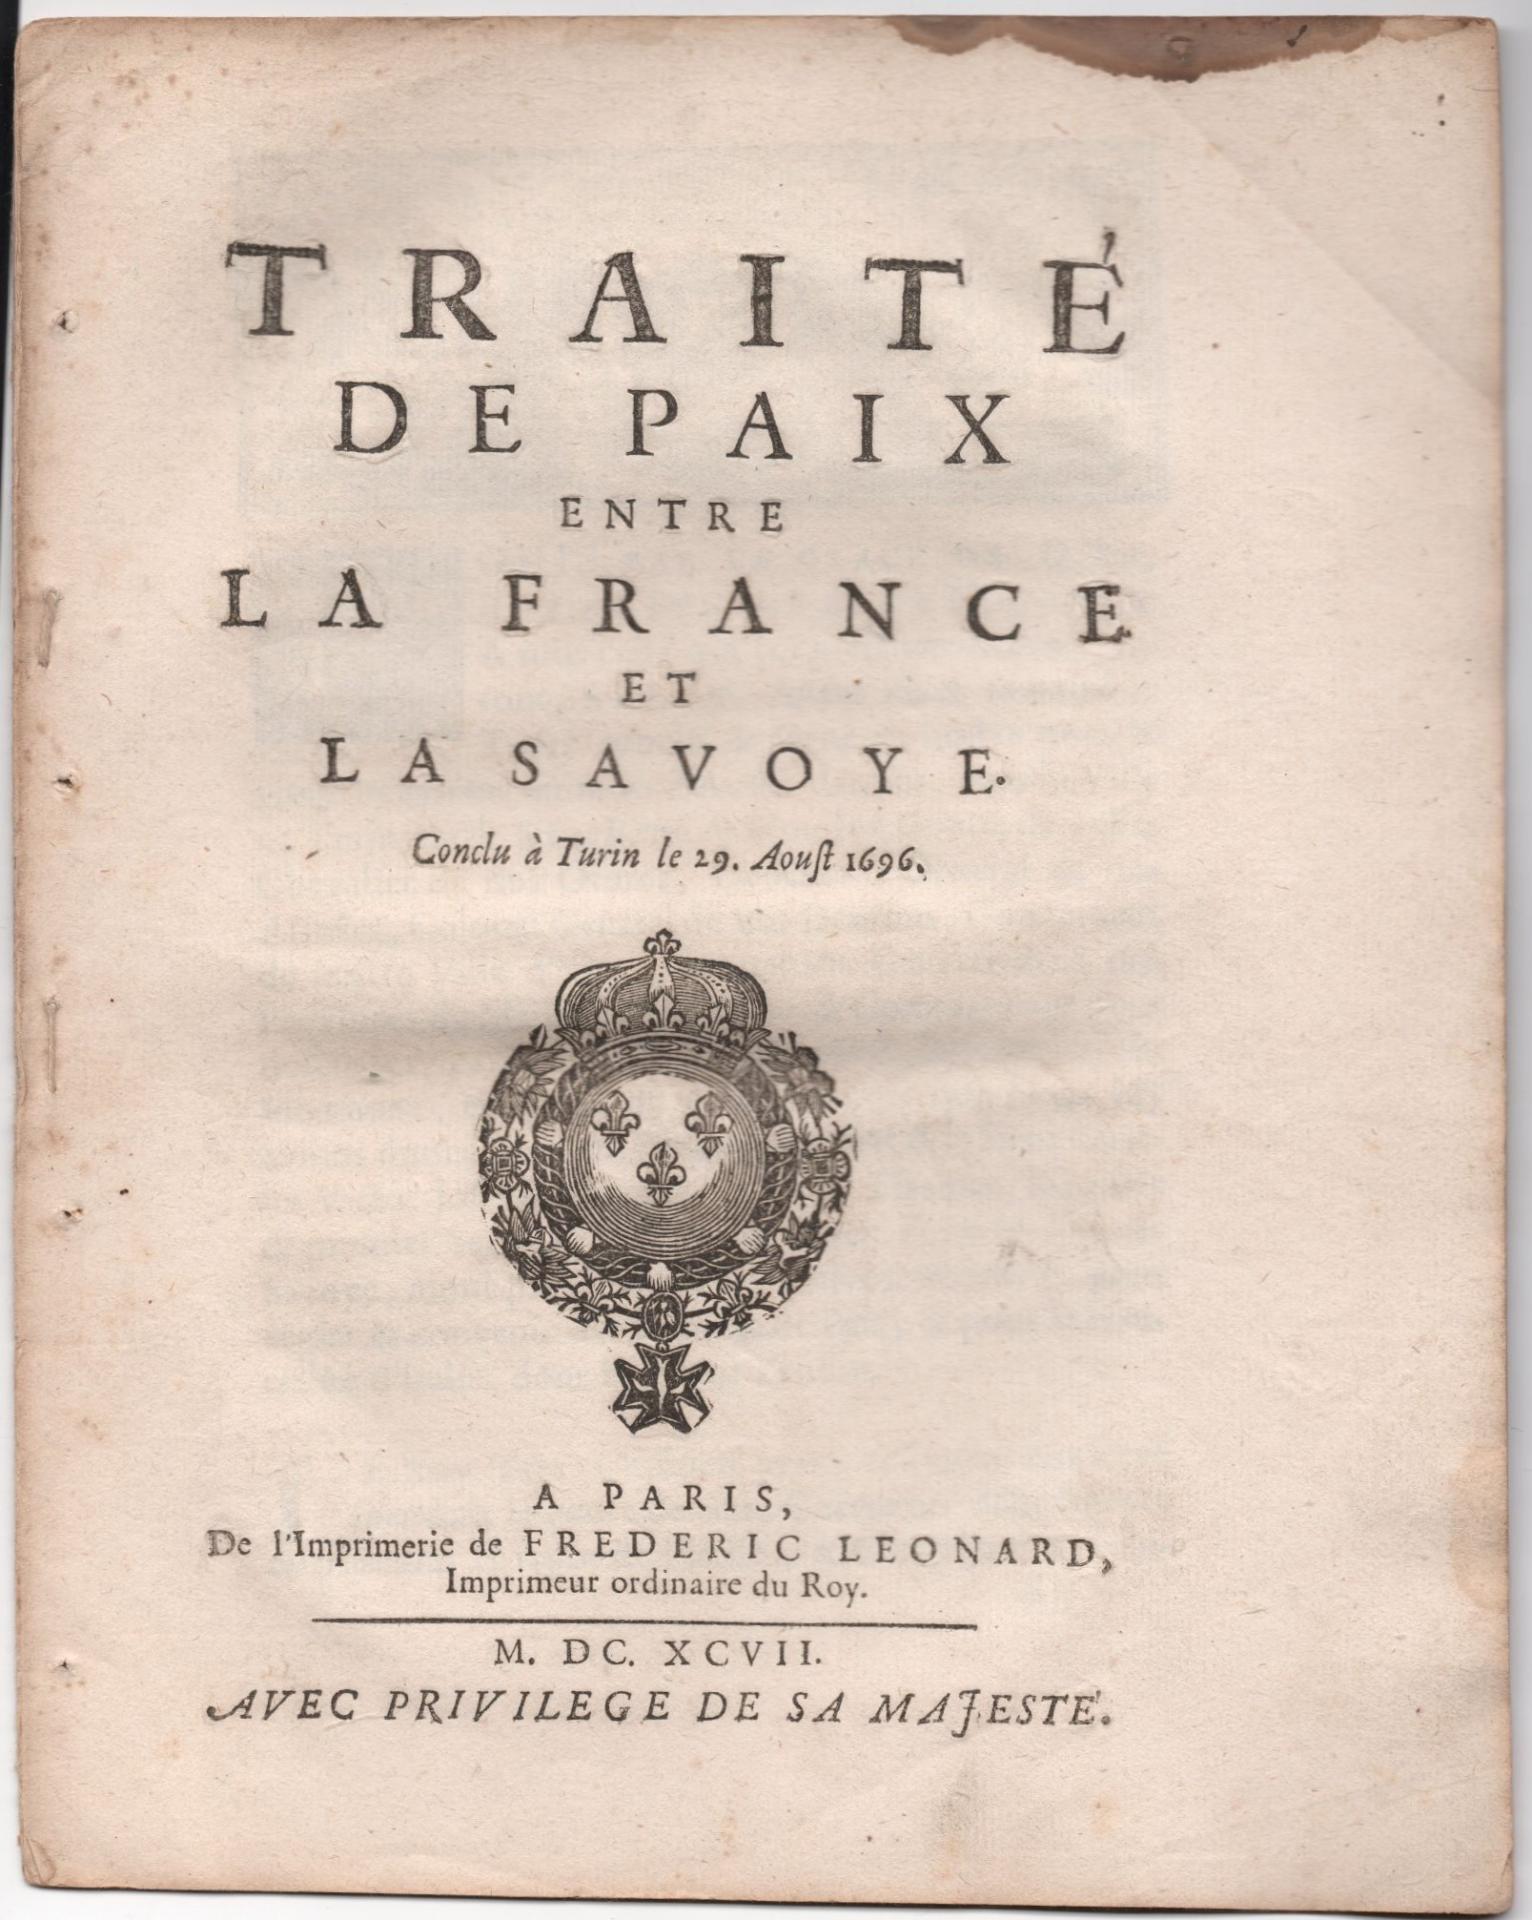 Traite de paix entre la France et la Savoie 1697